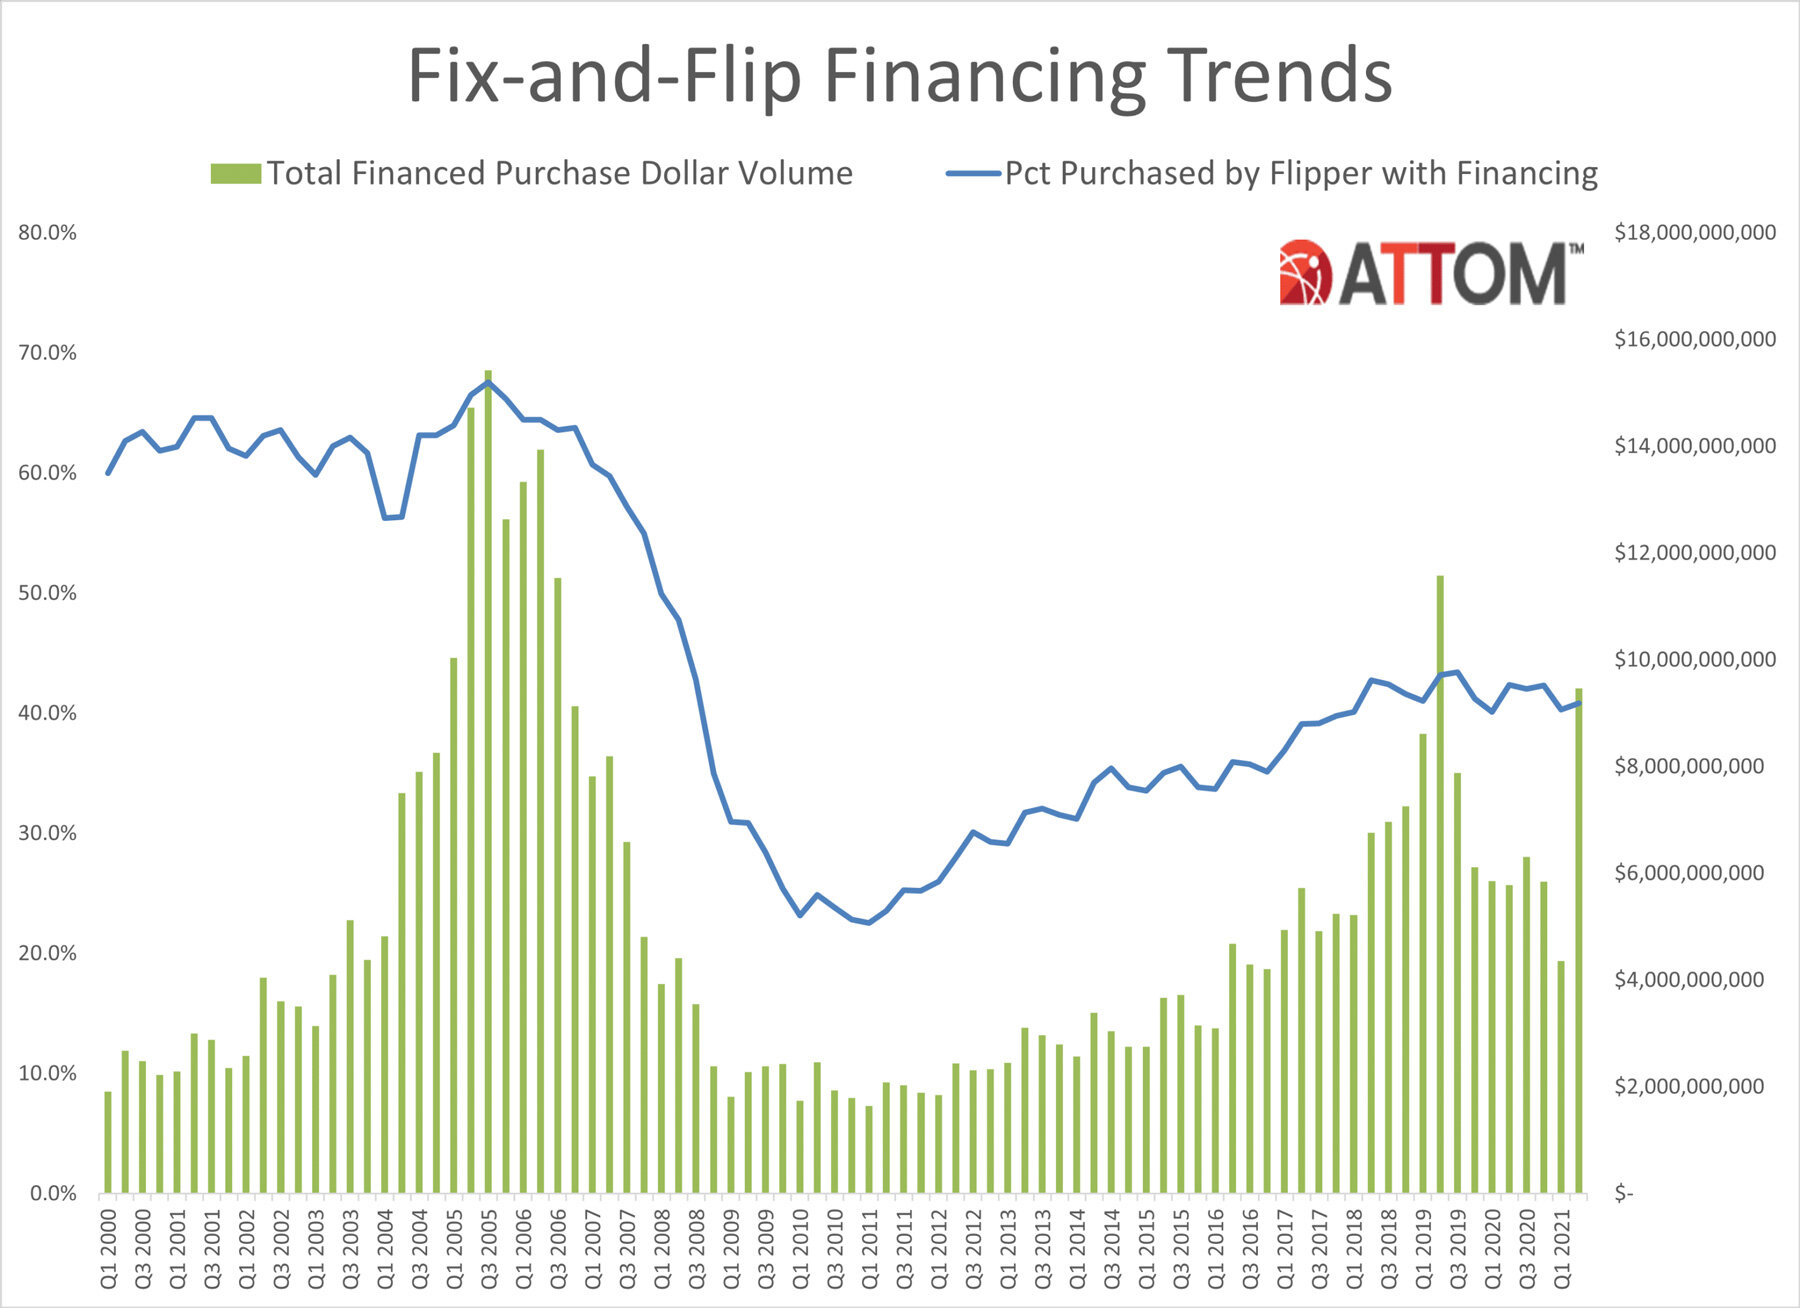 https://www.worldpropertyjournal.com/news-assets/Q2-2021-Fix-and-Flip-Financing-Trends-Chart.jpg